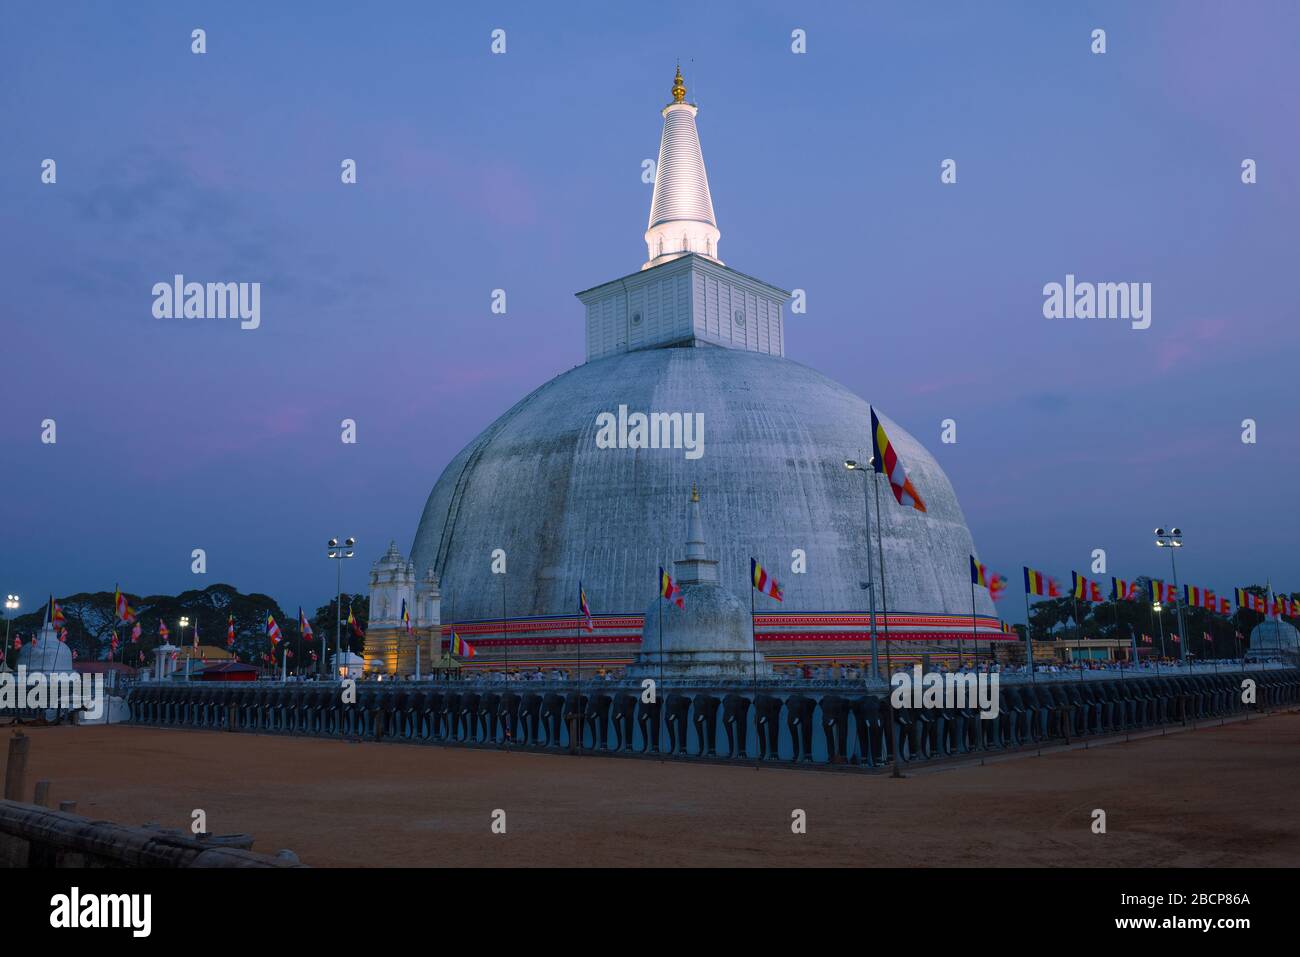 View of the Ruwanweli Maha Seya dagoba in the evening twilight. Anuradhapura, Sri Lanka Stock Photo